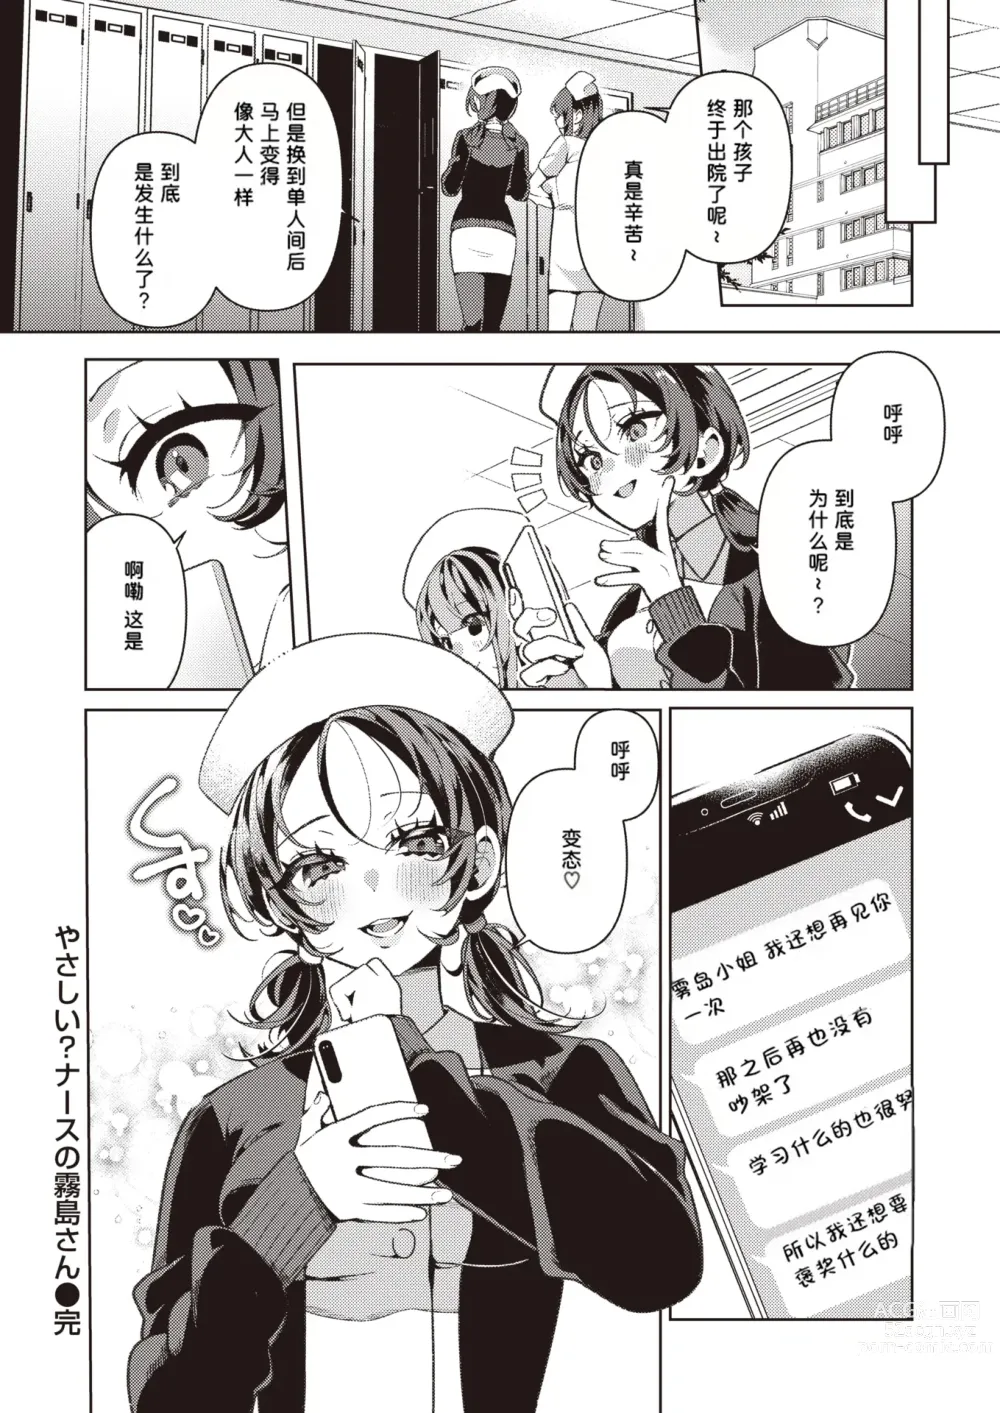 Page 29 of manga Yasashii? Nurse no Kirishima-san